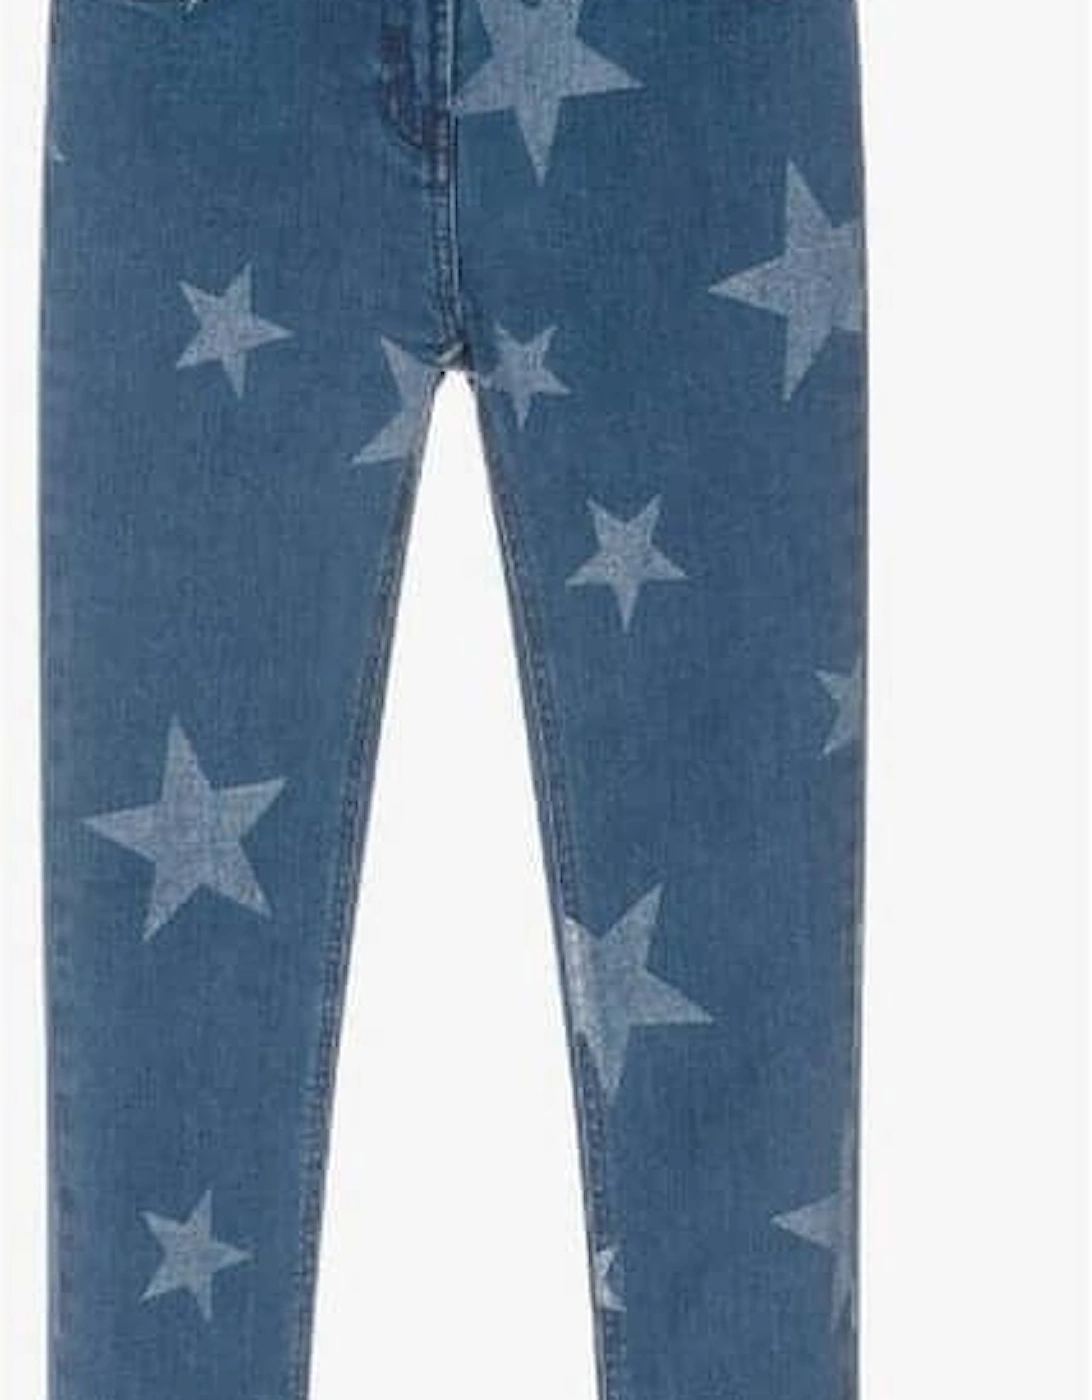 Girls Blue Stars Skinny Jeans, 2 of 1